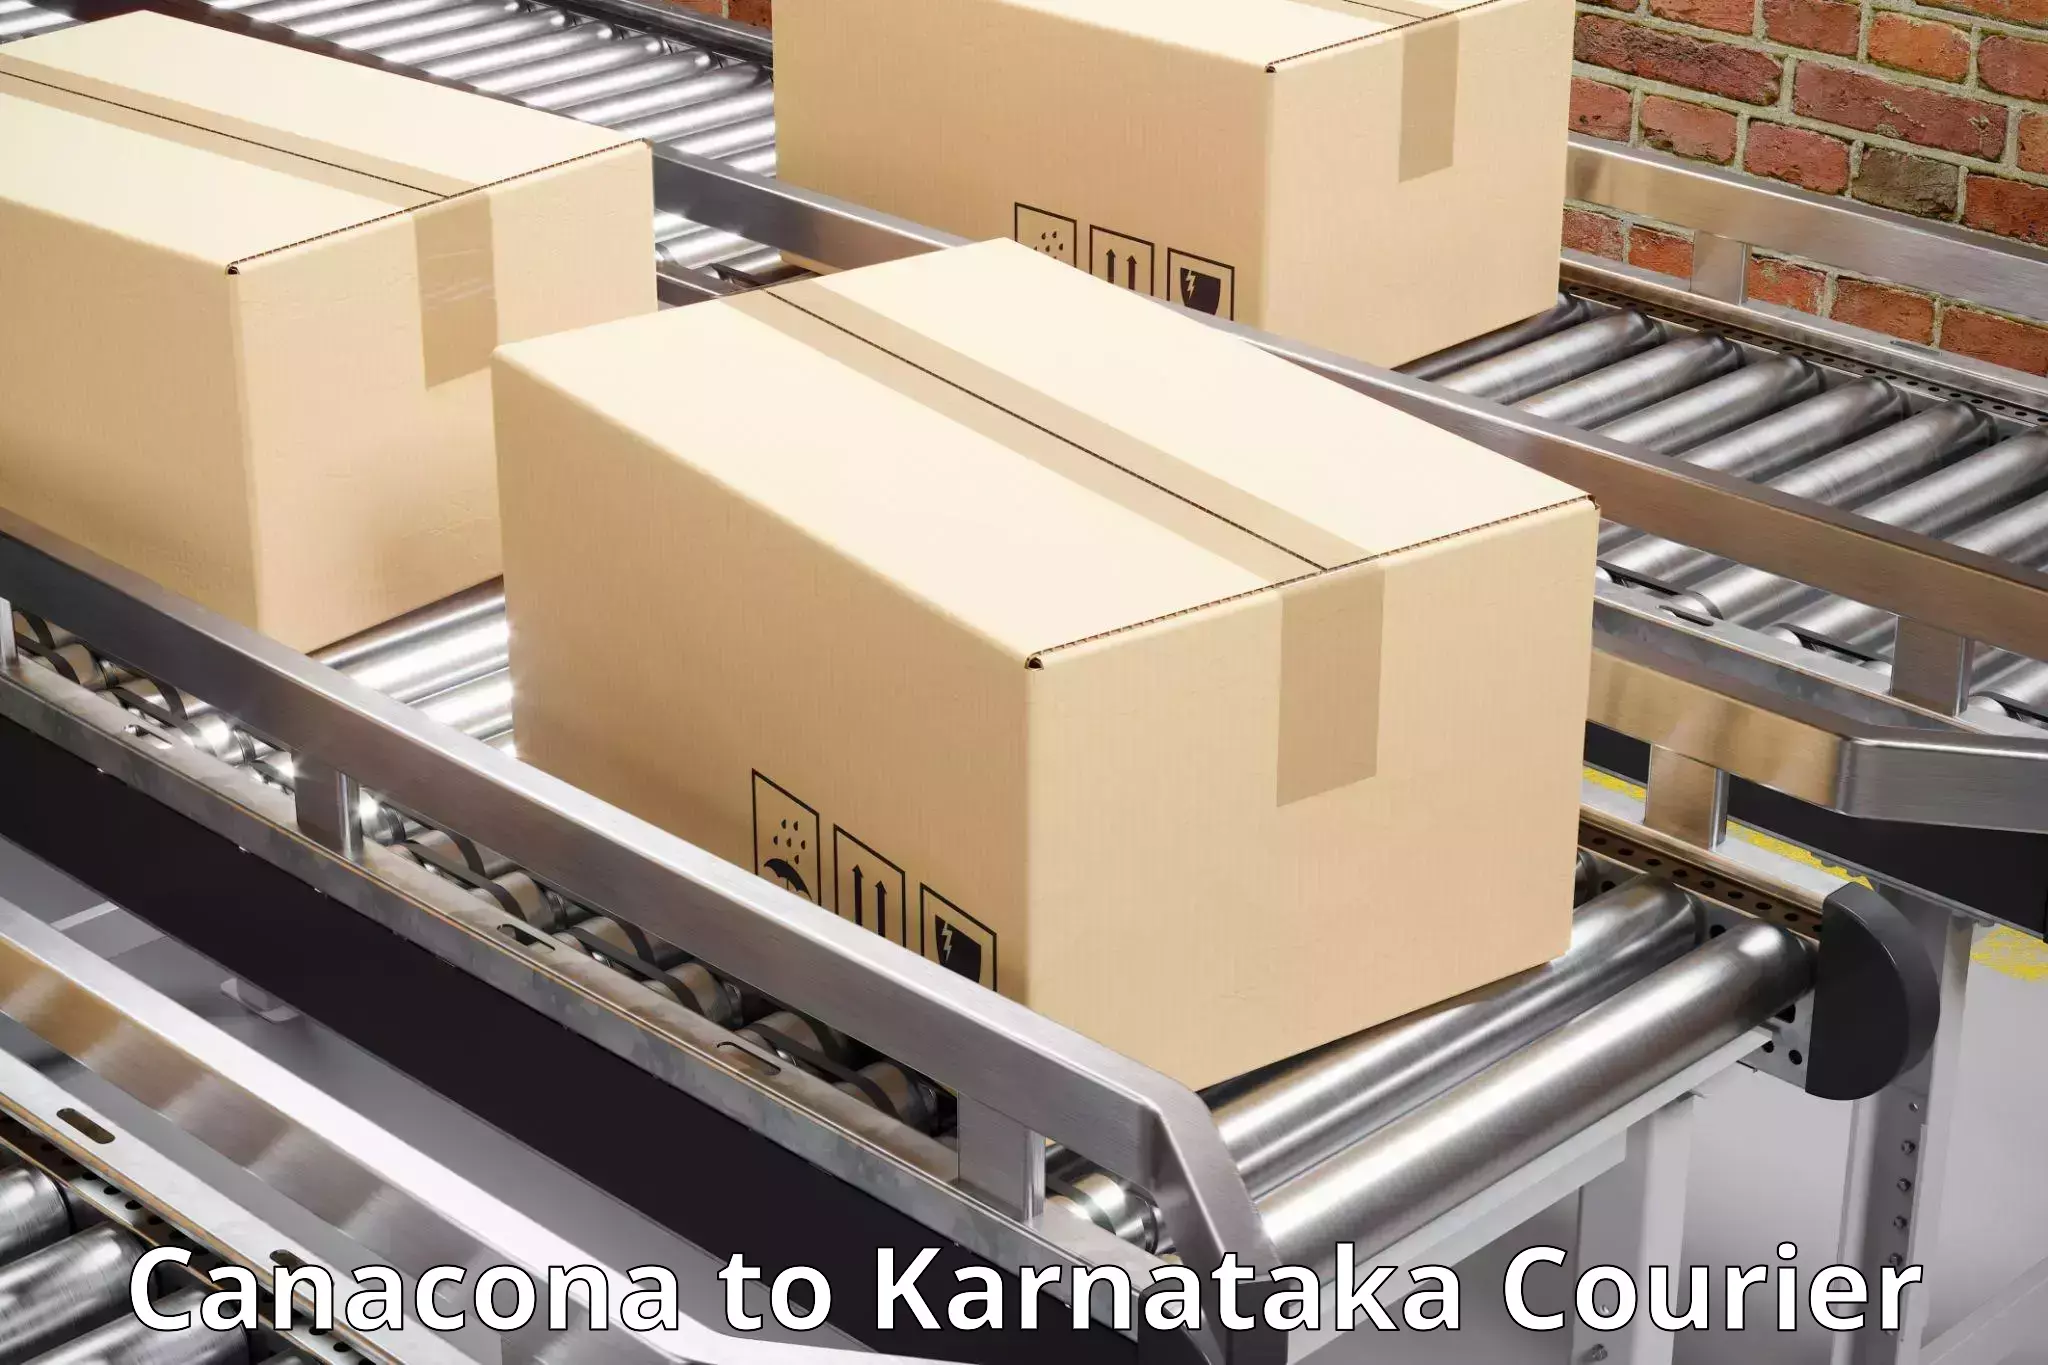 Advanced freight services Canacona to Karnataka